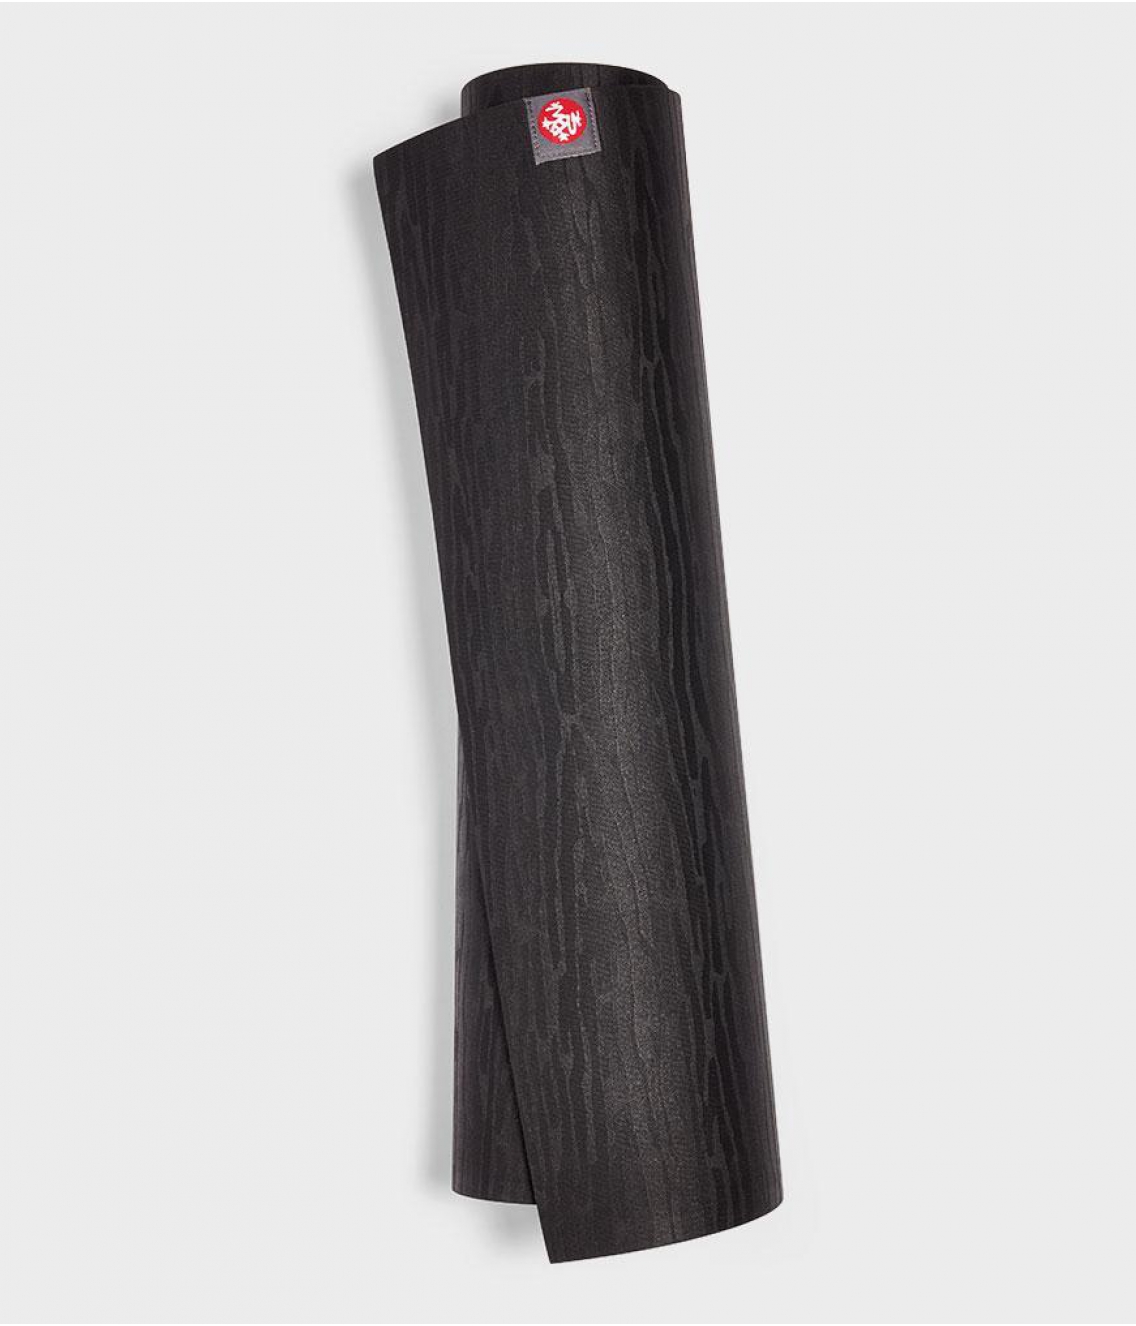 Профессиональный каучуковый коврик для йоги Manduka eKO 180*61*0,6 см - Black